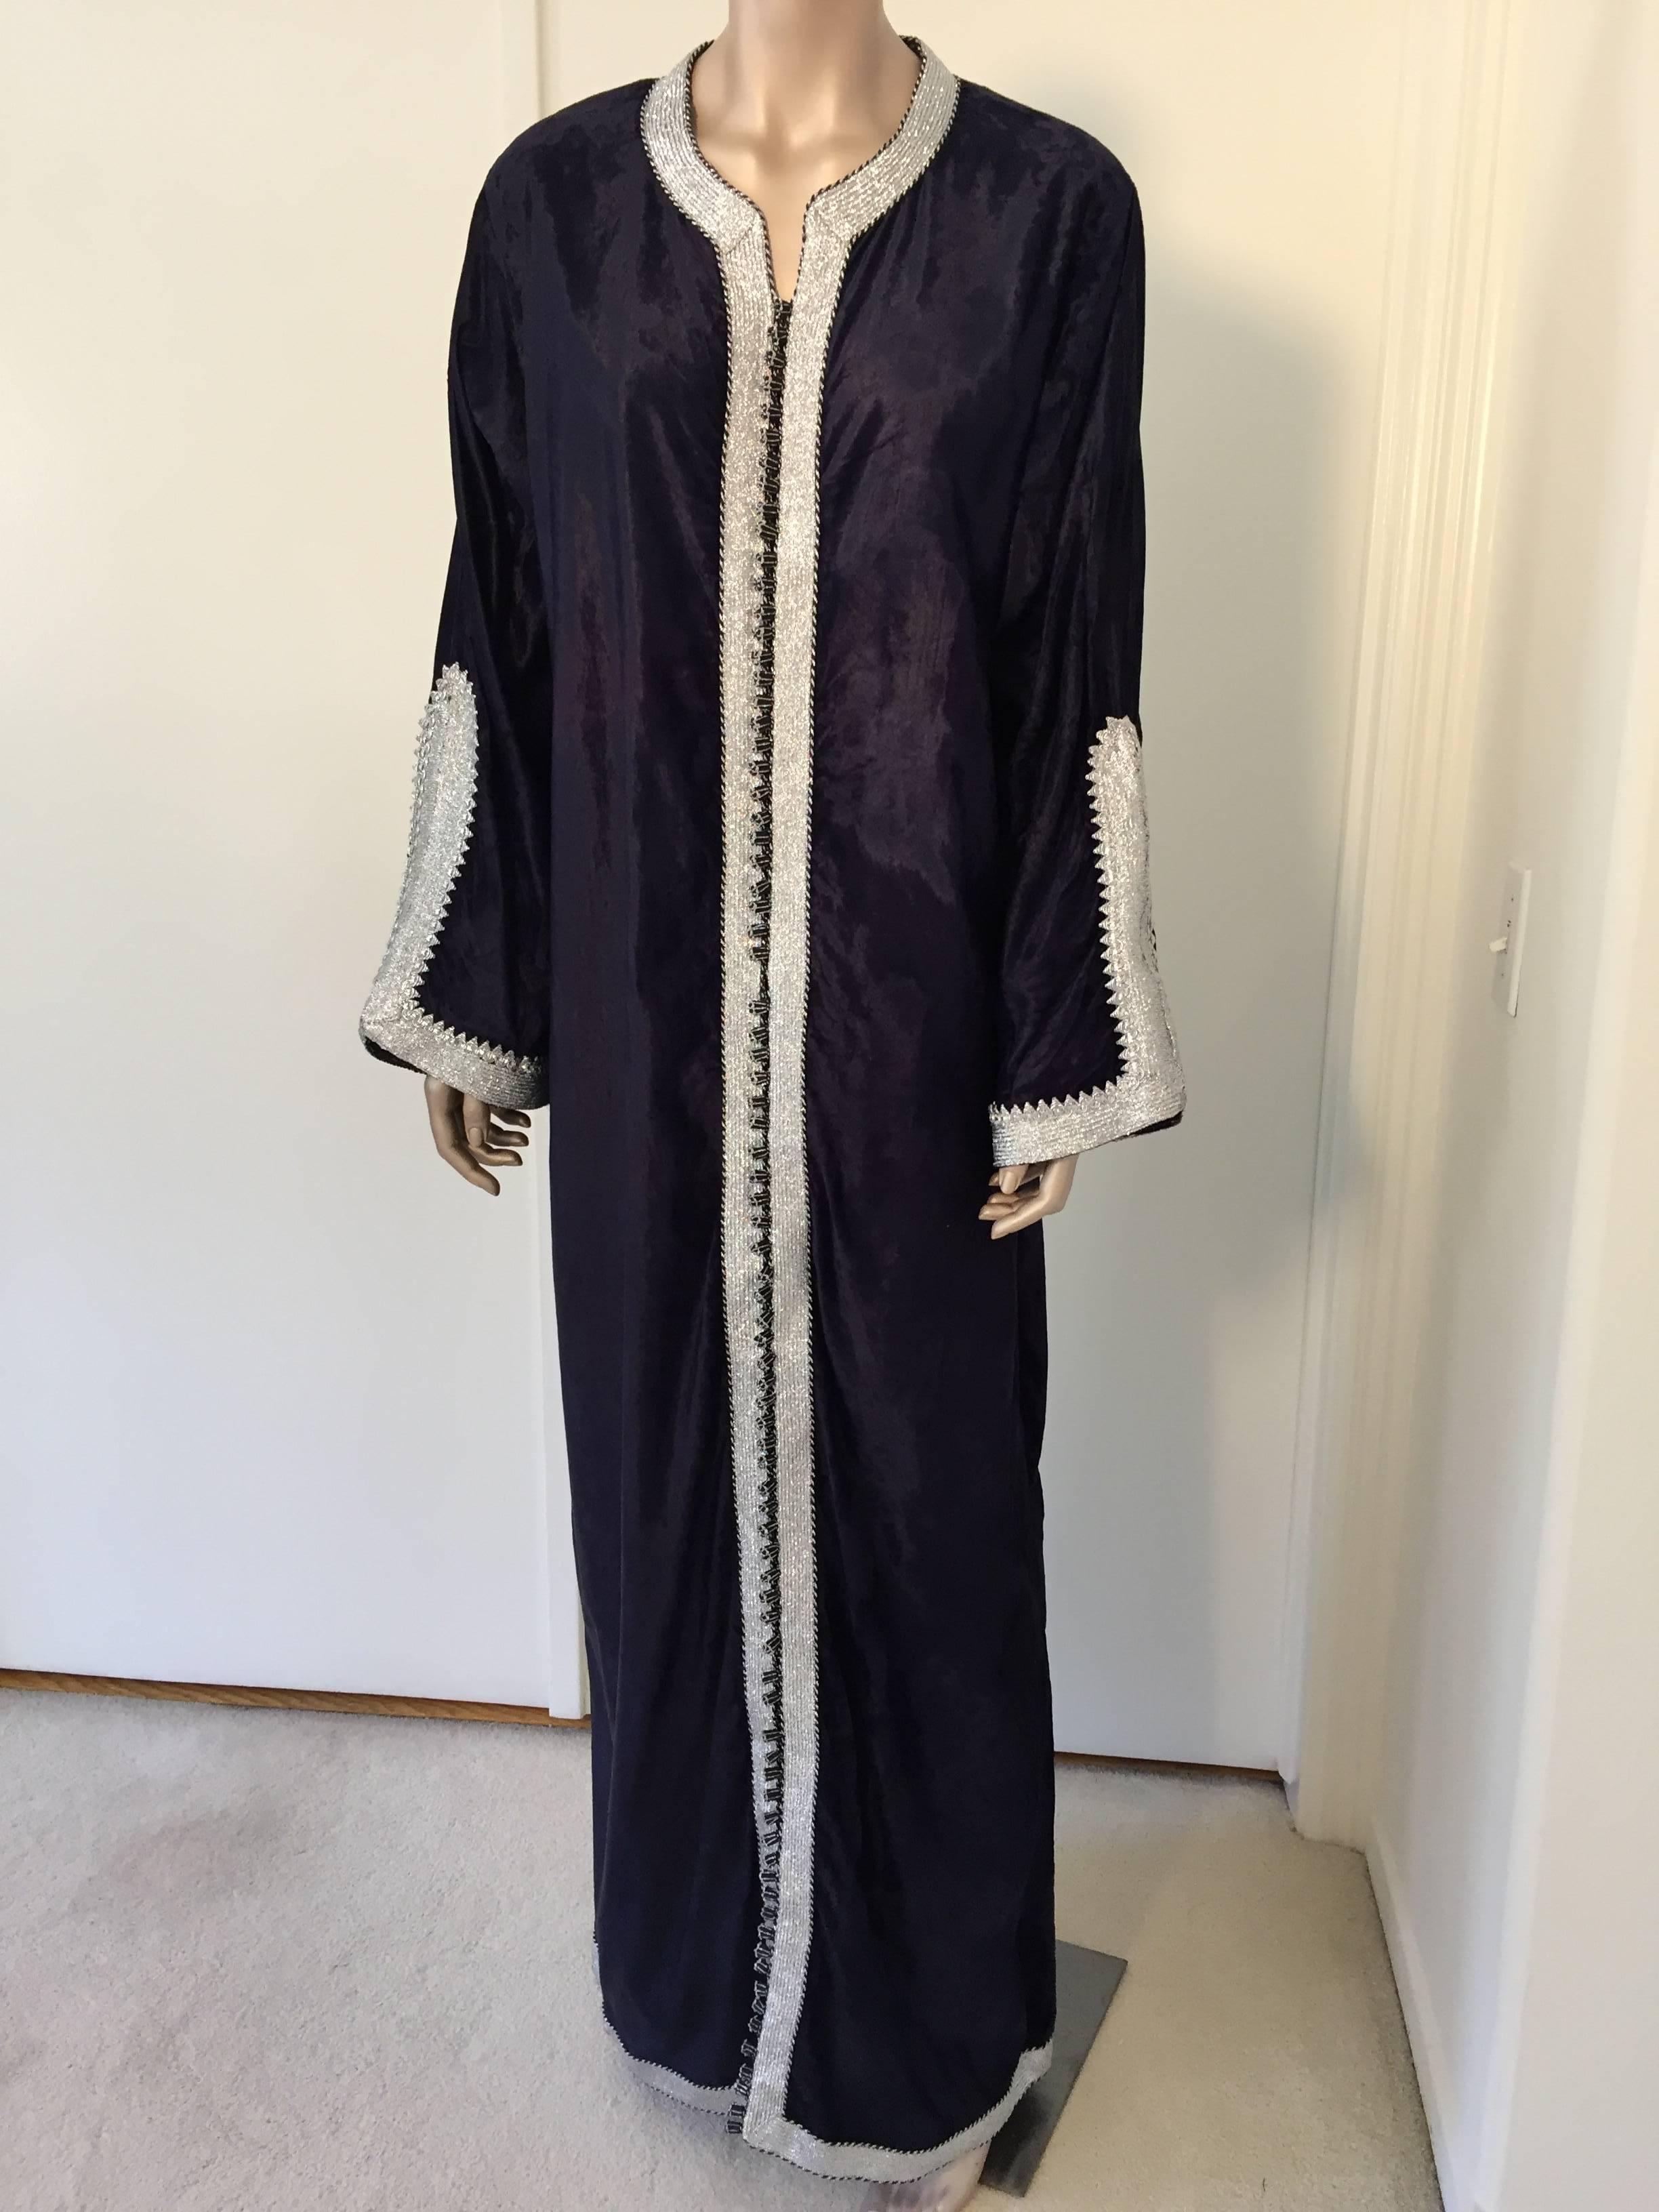 Elegant caftan marocain en velours bleu nuit profond brodé de fils métalliques argentés,
vers les années 1970.
Cette longue robe maxi kaftan est brodée et embellie entièrement à la main.
Robe de soirée marocaine du Moyen-Orient, unique en son